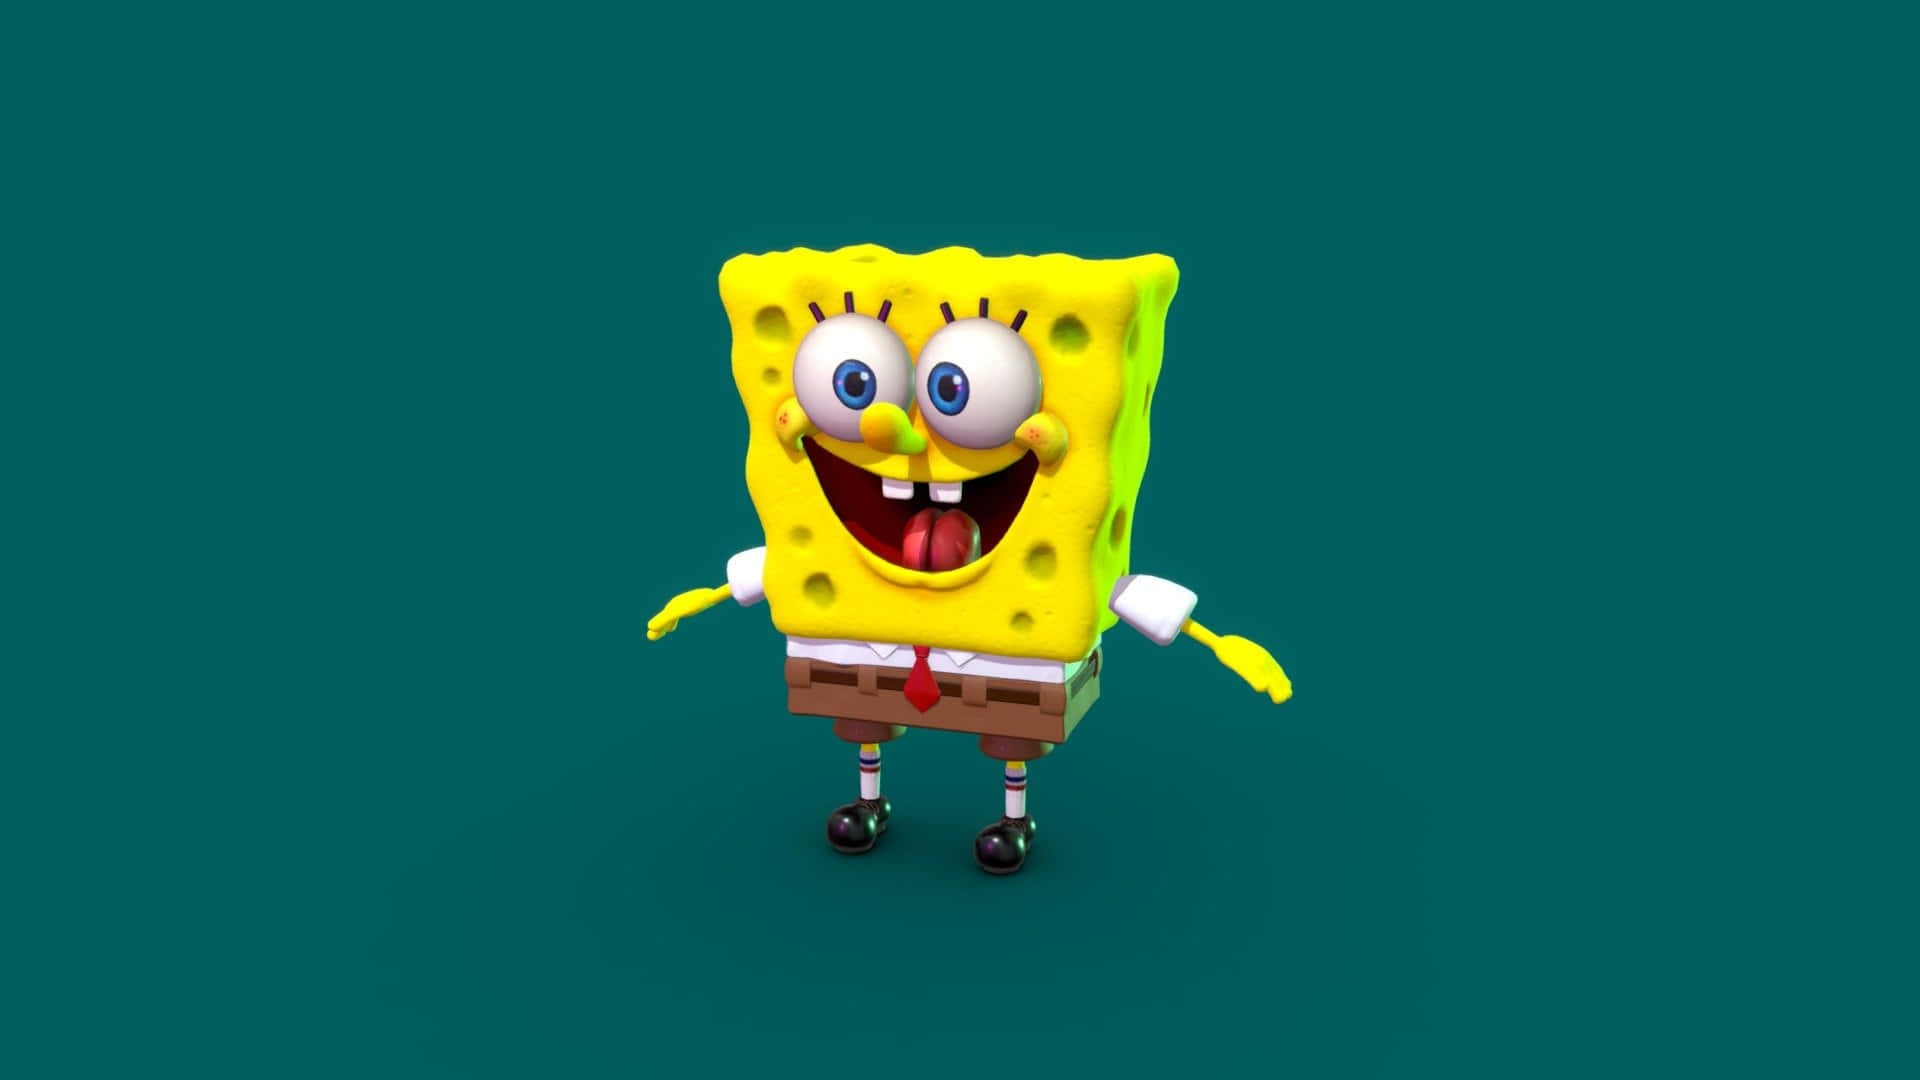 Immaginedel Modello 3d Di Spongebob Squarepants